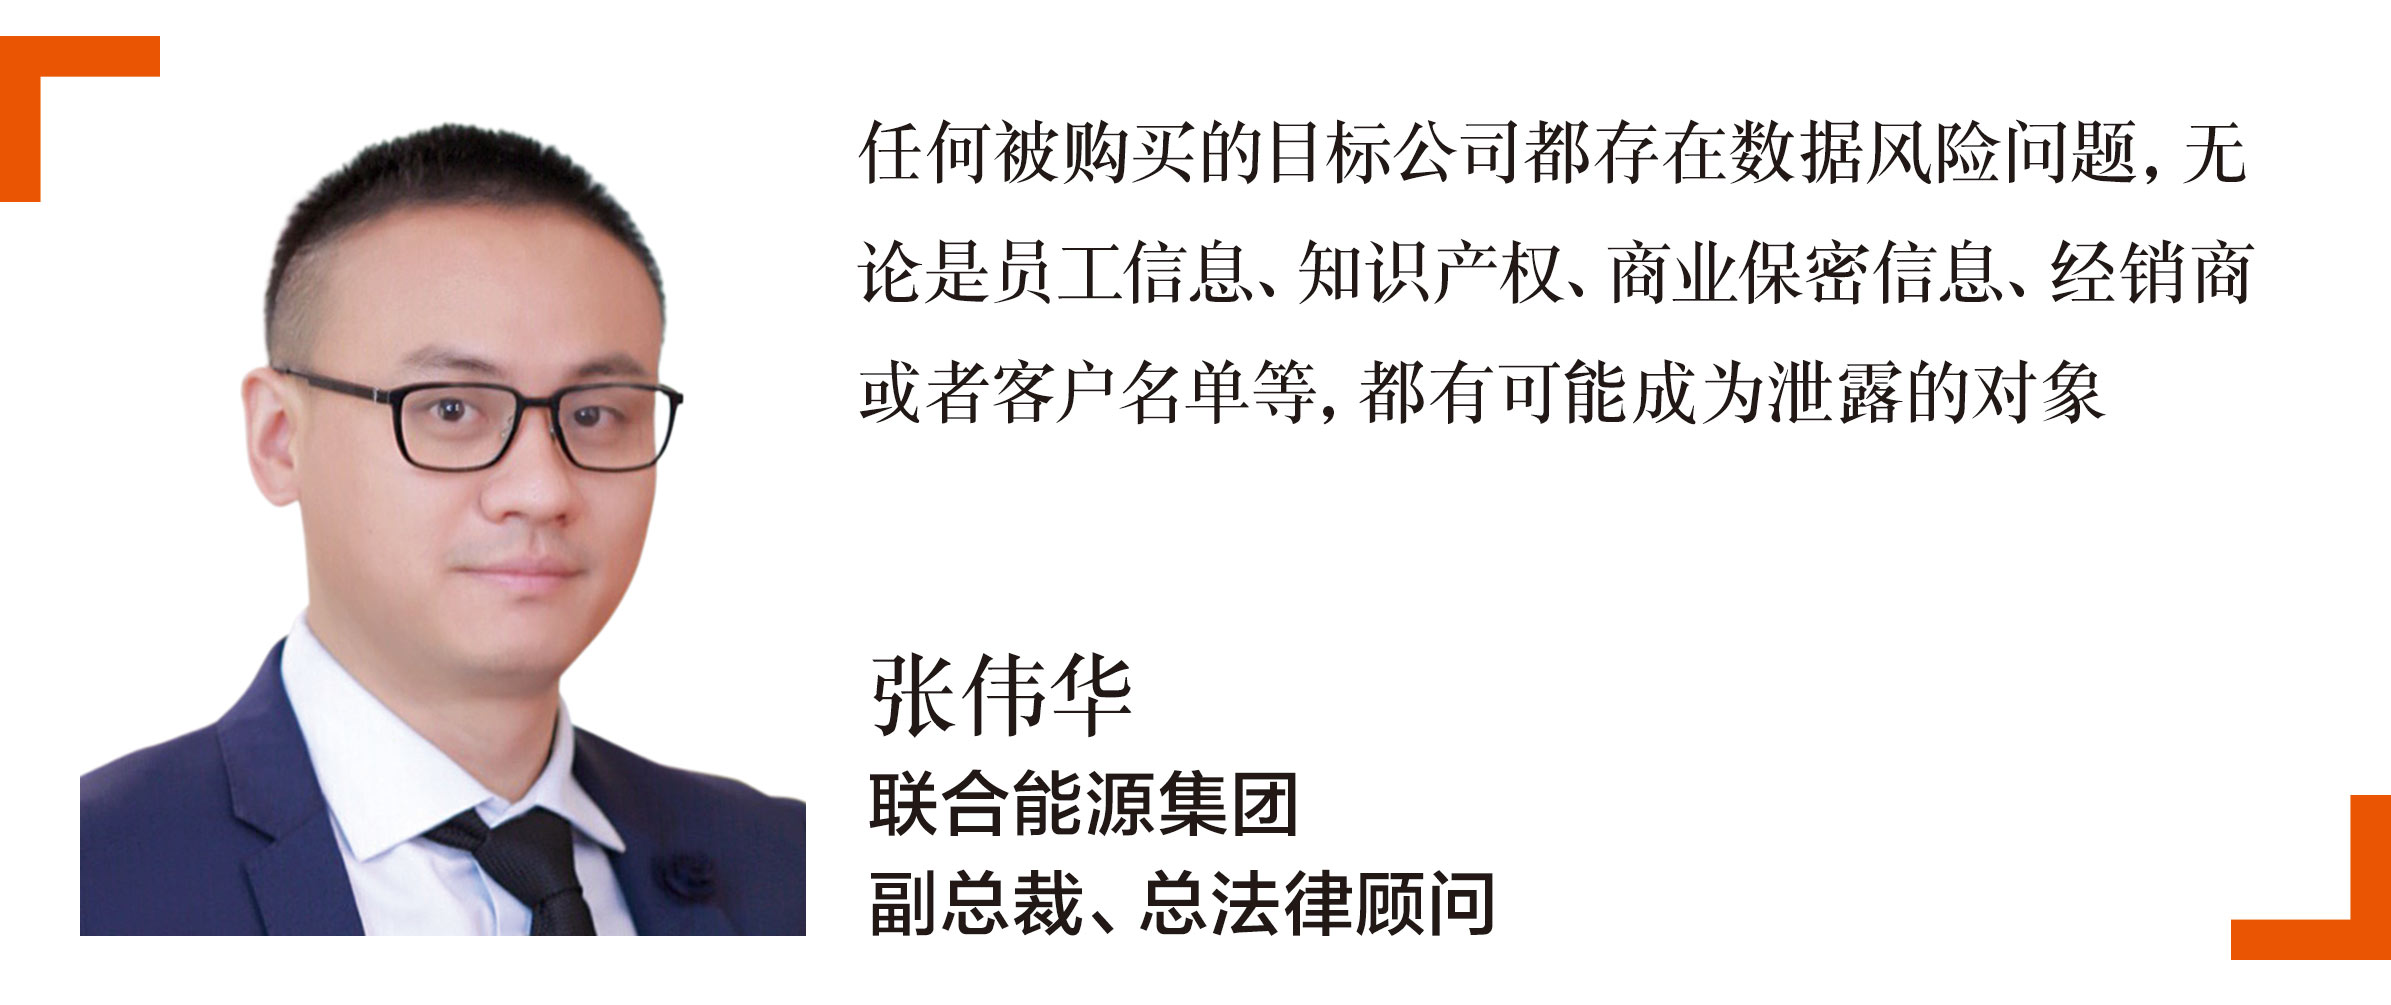 联合能源集团副总裁及总法律顾问张伟华-Leslie-Zhang-is-the-vice-president-and-general-counsel-at-United-Energy-Group